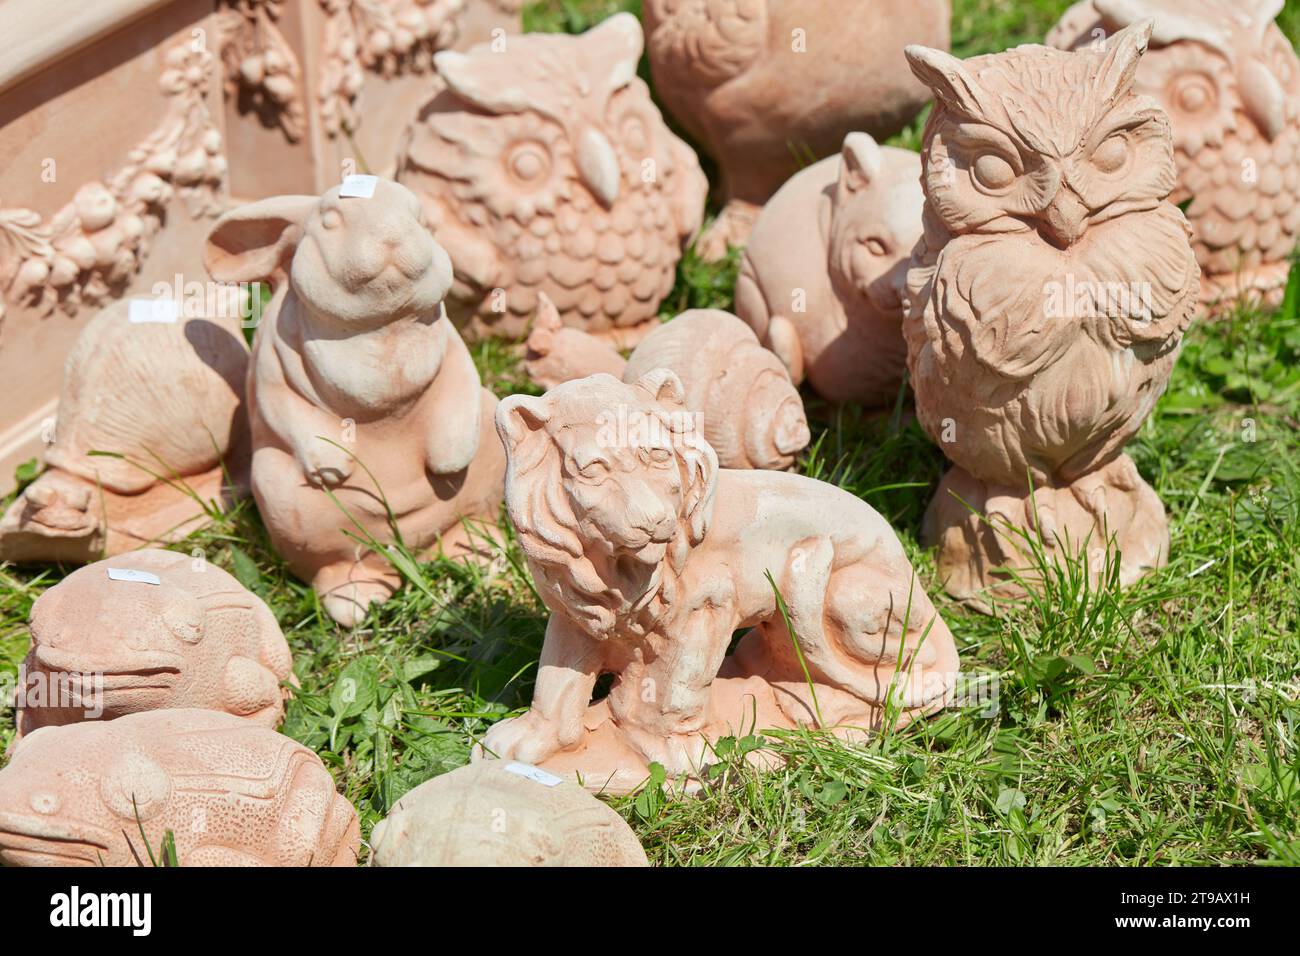 CARAVINO, ITALIE - 28 AVRIL 2023 : sculptures d'animaux de compagnie en terre cuite au printemps lors de la foire Tre Giorni per il Giardino au château Masino près de Turin, Italie. Banque D'Images